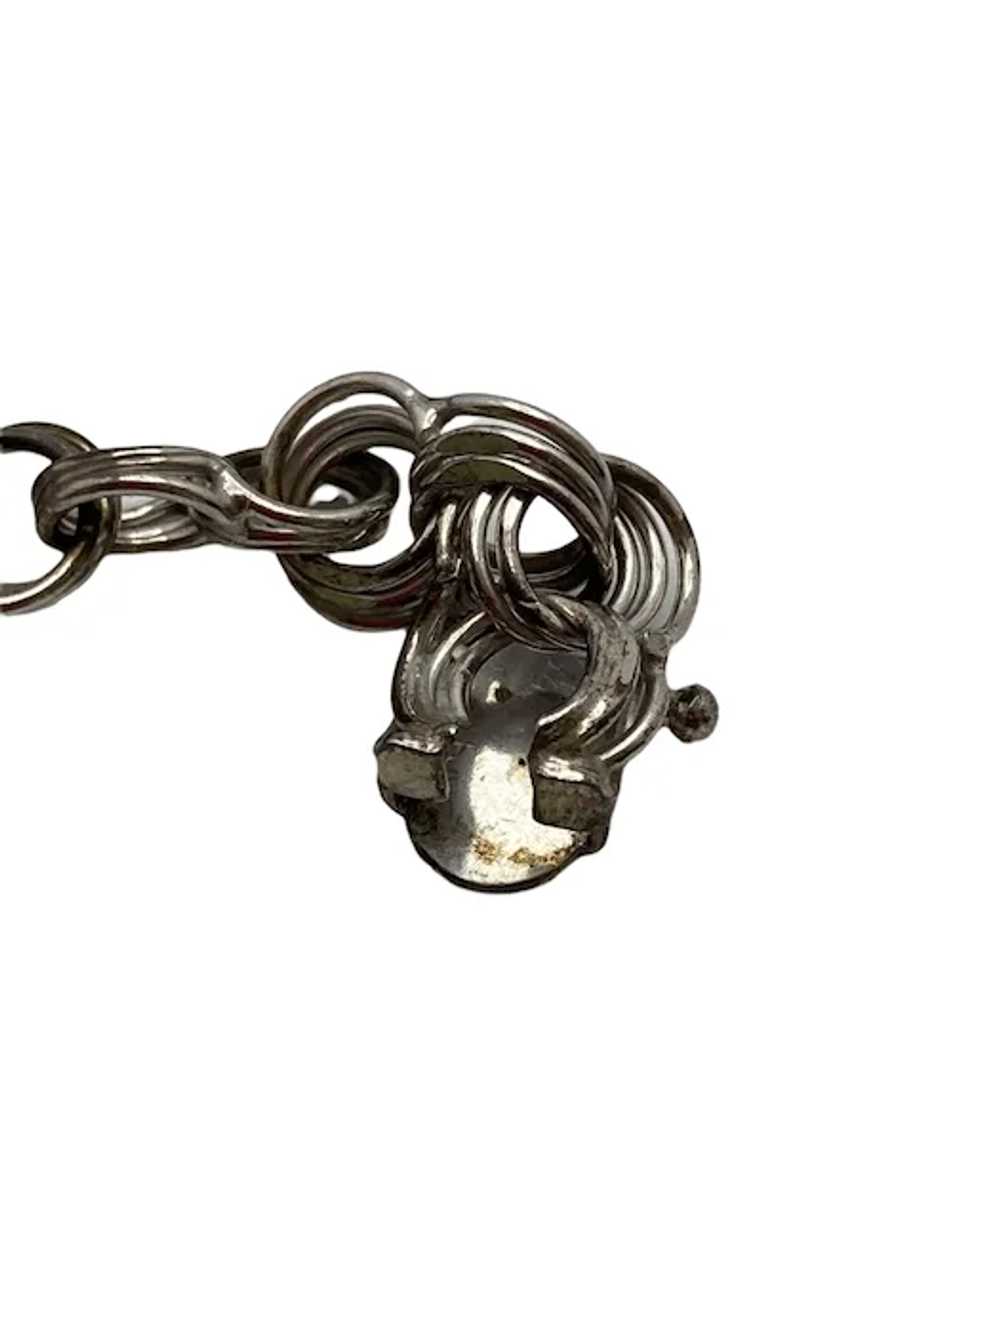 Vintage Sterling Silver Link Charm Bracelet - image 10